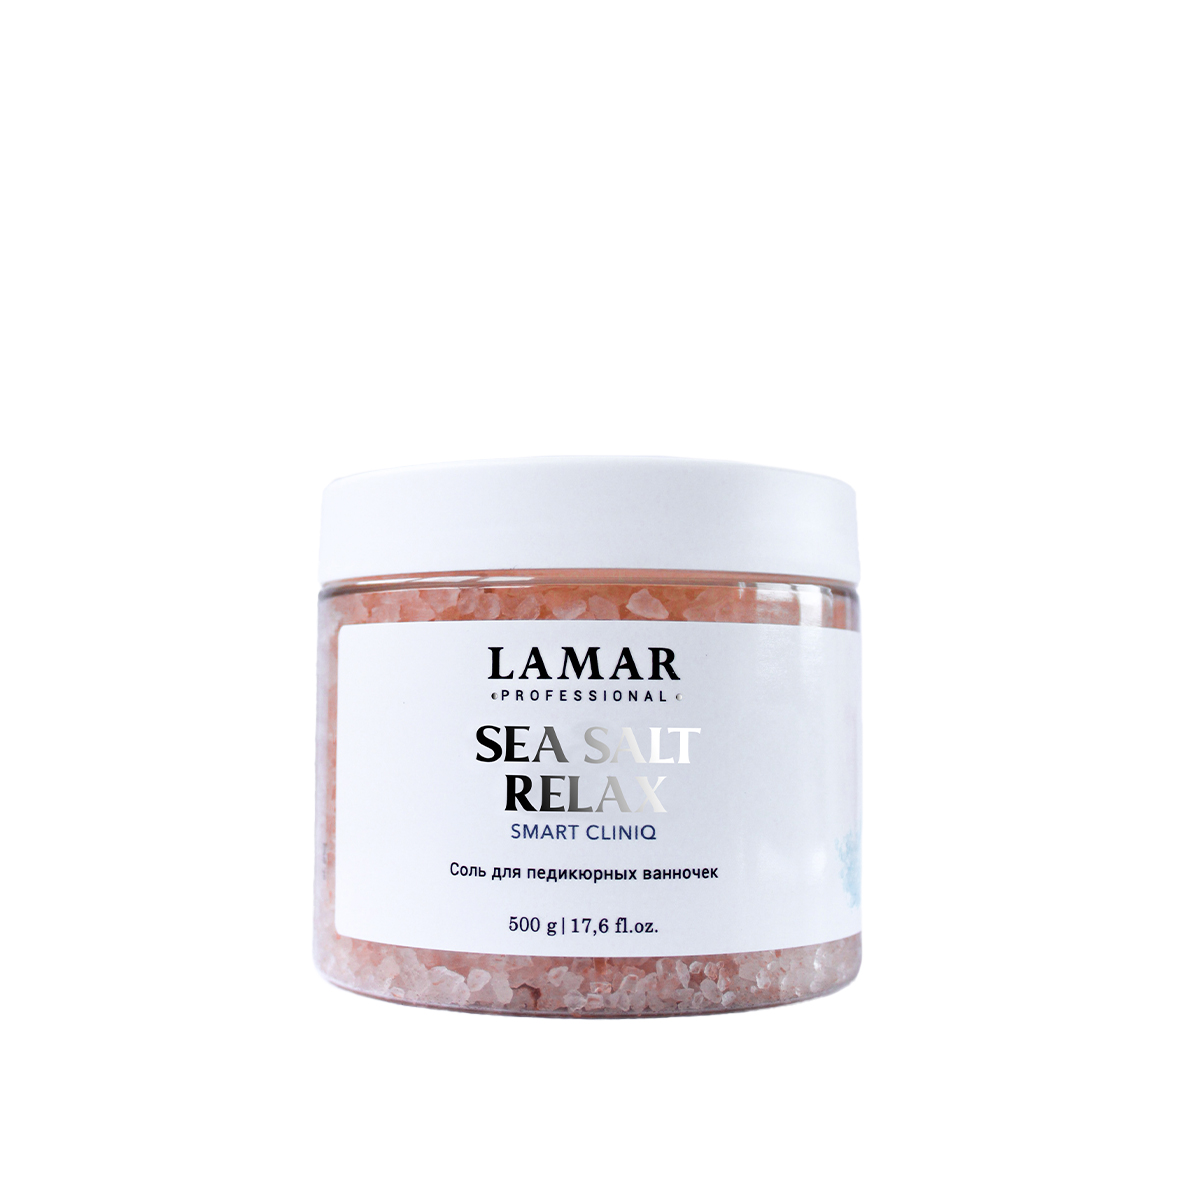 Соль для педикюрных ванночек Lamar Professional Sea salt relax 500 г соль для ванн sensoterapia lavender aroma relax расслабляющая 560 г 6шт